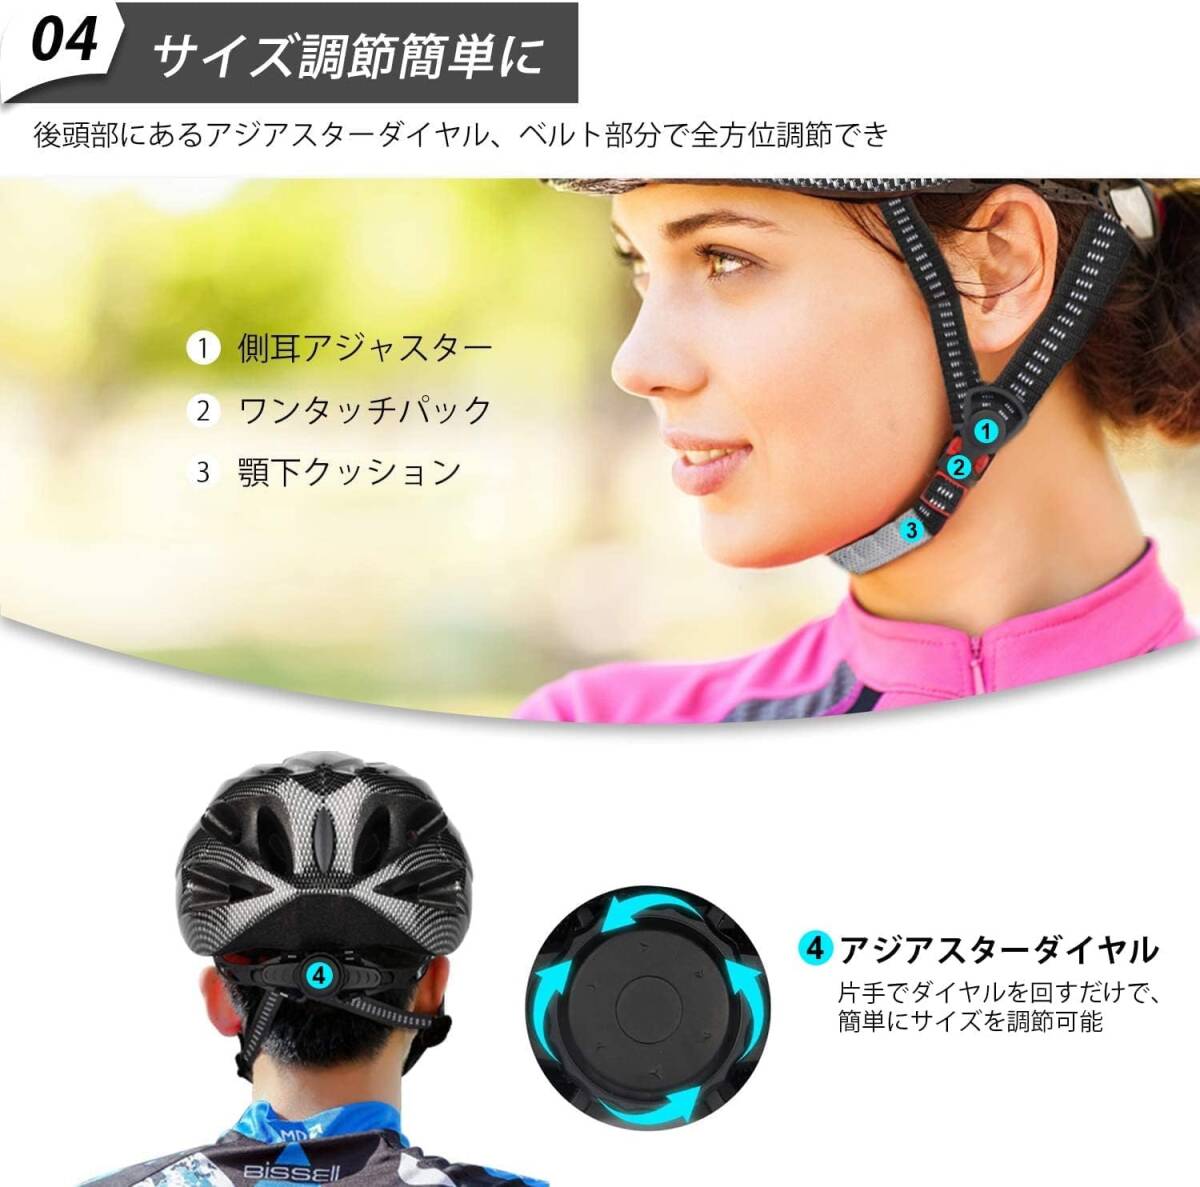 自転車ヘルメット 高耐衝撃性スポーツヘルメット 通気性 サイズ調整可能 サイクルヘルメット 男女兼用 54-62 cm ネイビーxピンク_画像5